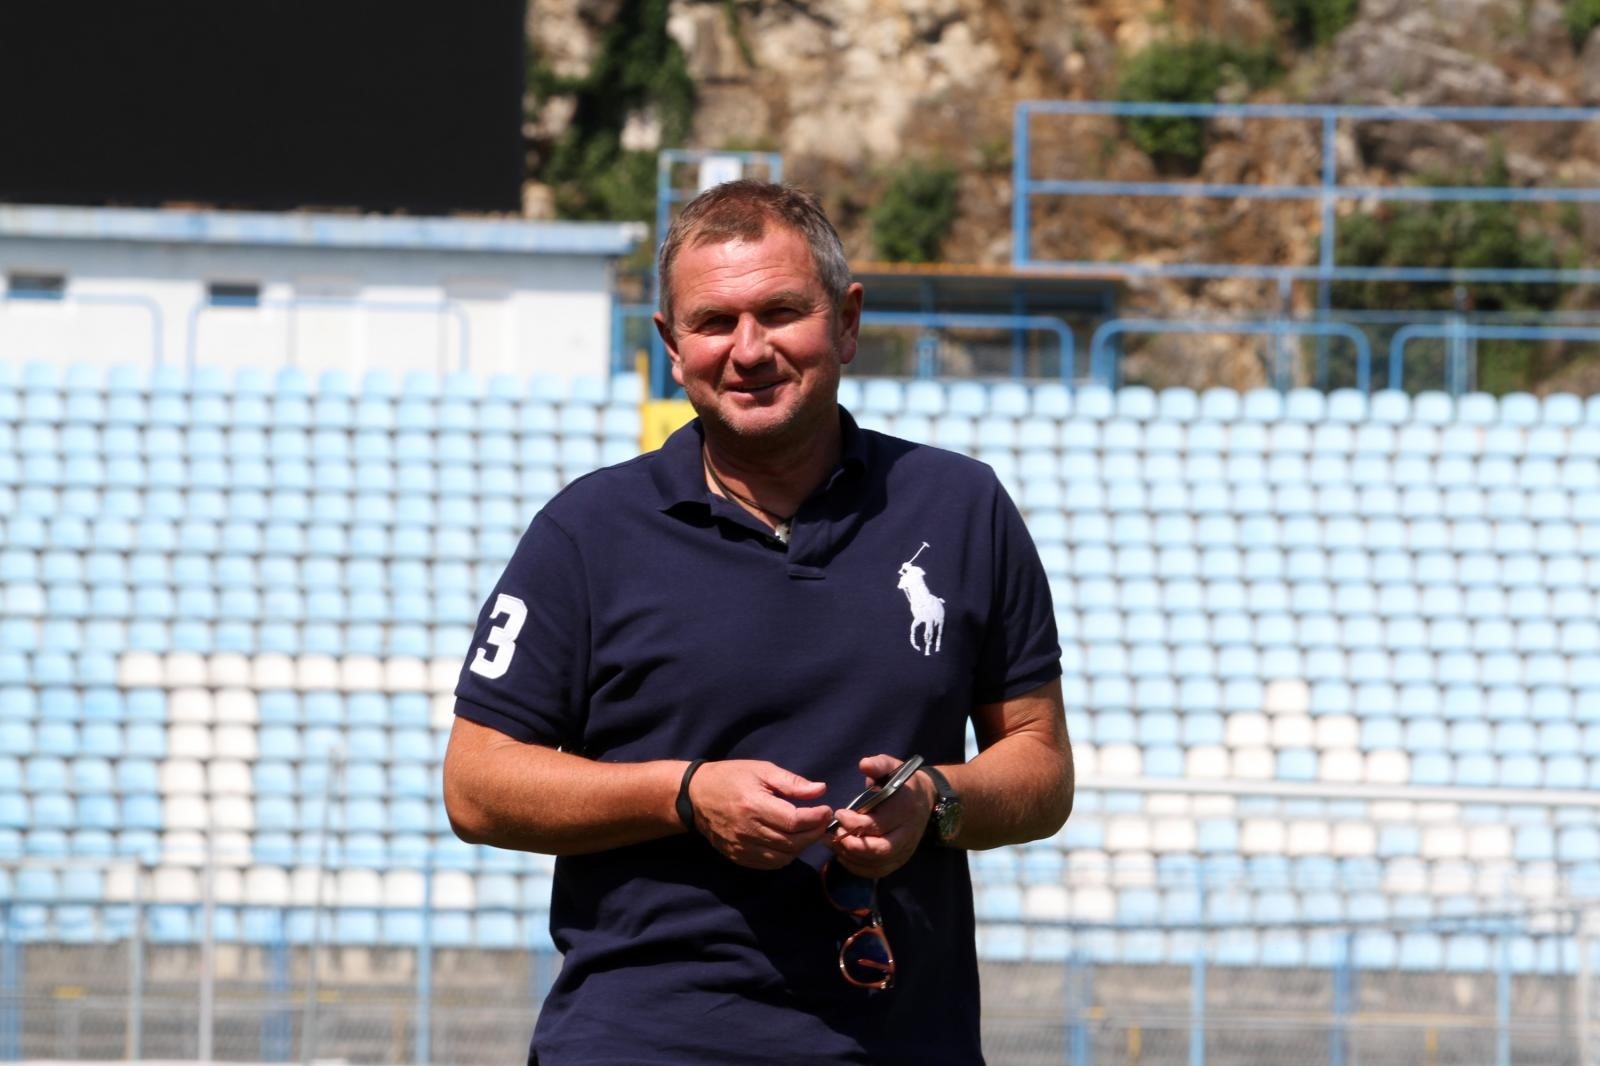 09.09.2014., Rijeka - Matjaz Kek, trener HNK Rijeka. 
Photo: Goran Kovacic/PIXSELL